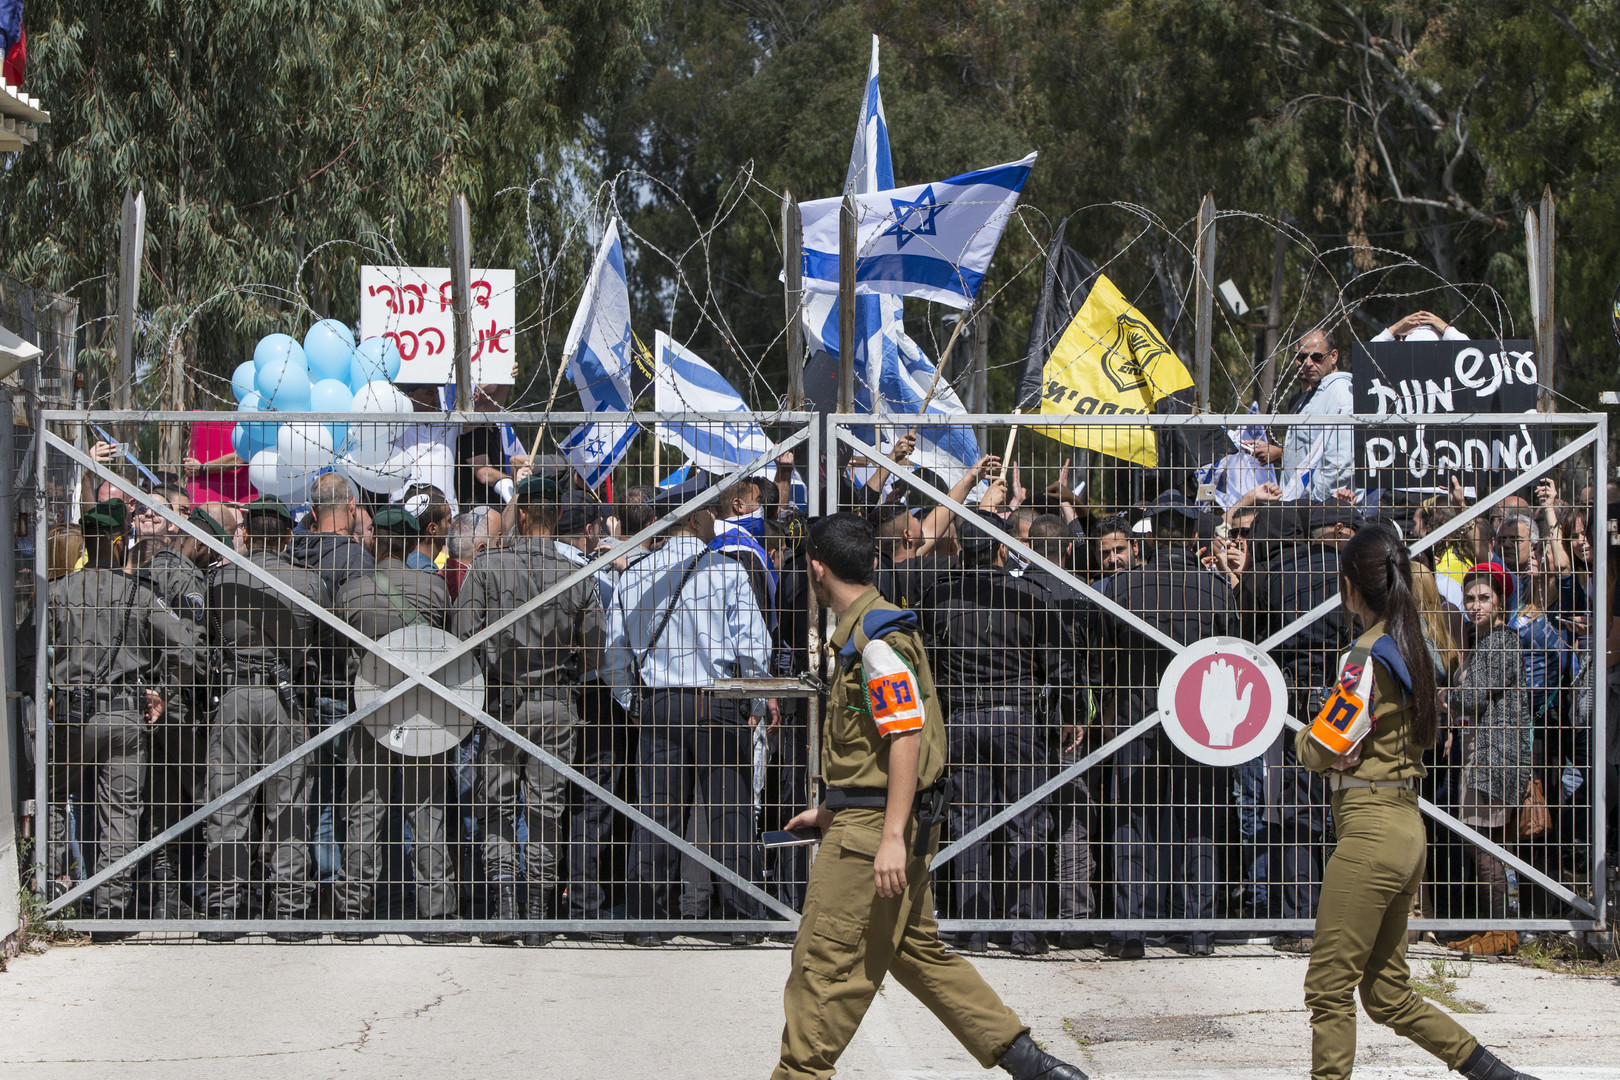 Palestinien tué à Hébron : malgré les accusations, les soutiens au soldat israélien se multiplient 